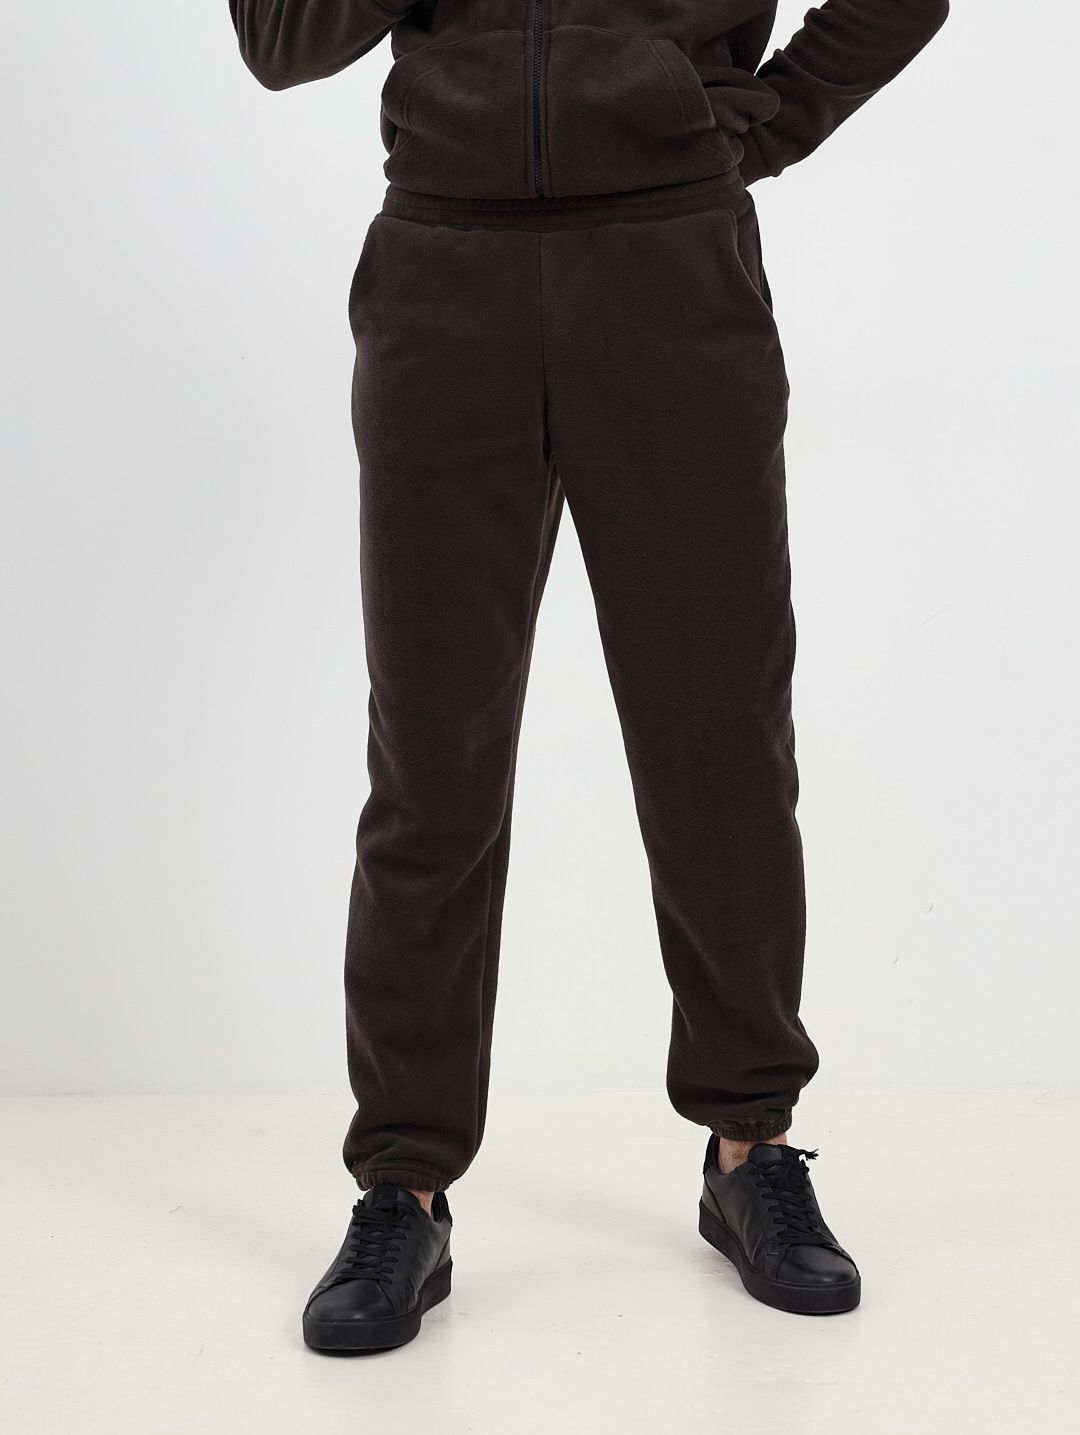 Спортивные брюки мужские MOM №1 MOM-88-3150F коричневые M